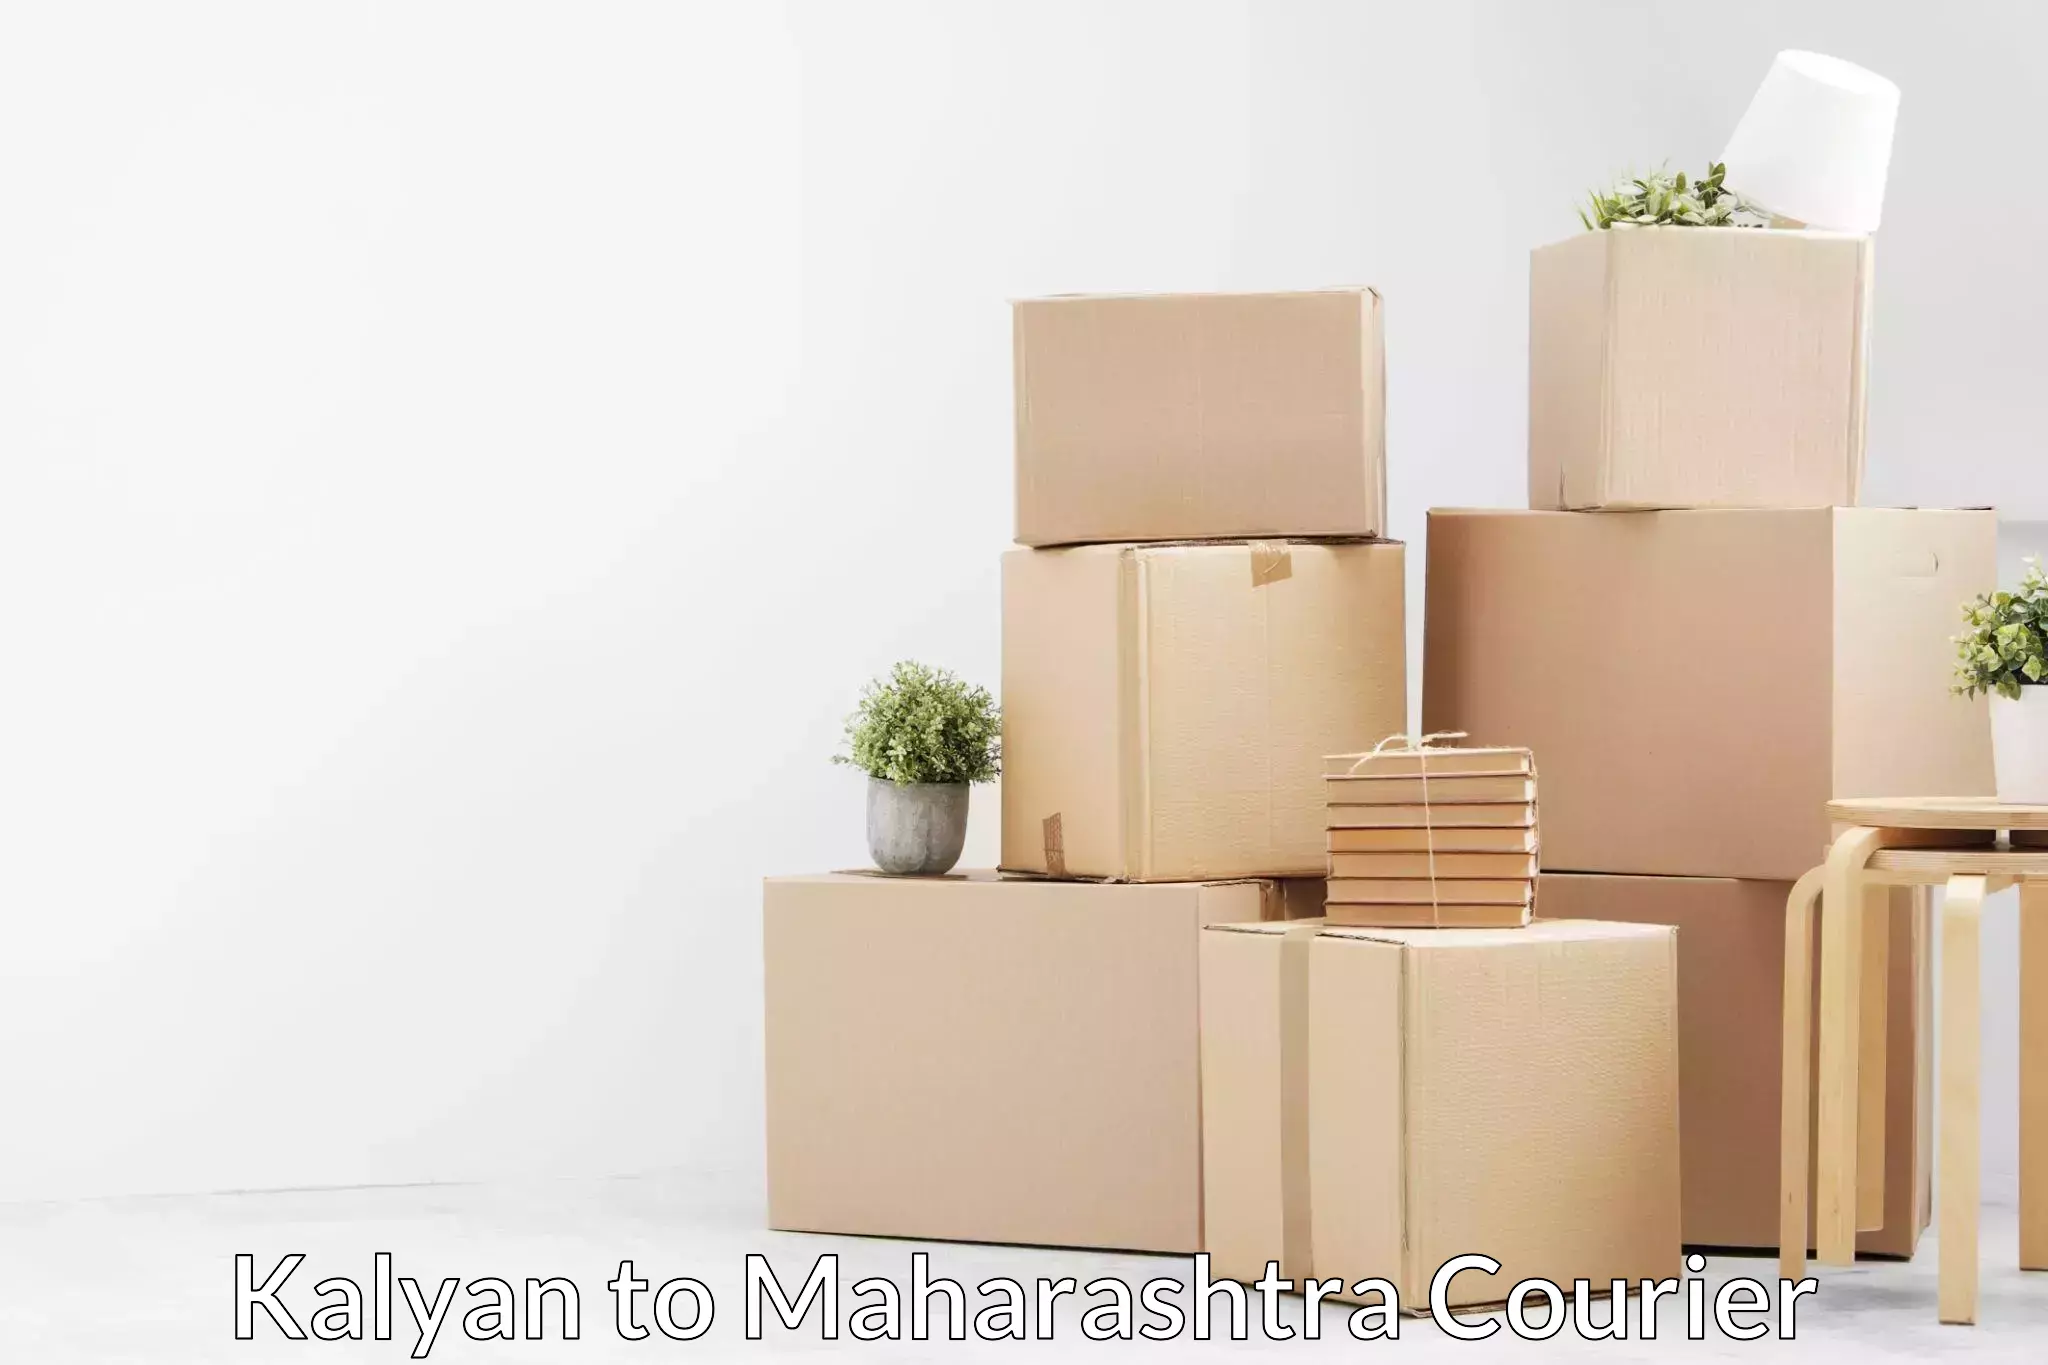 Professional moving company Kalyan to Maharashtra